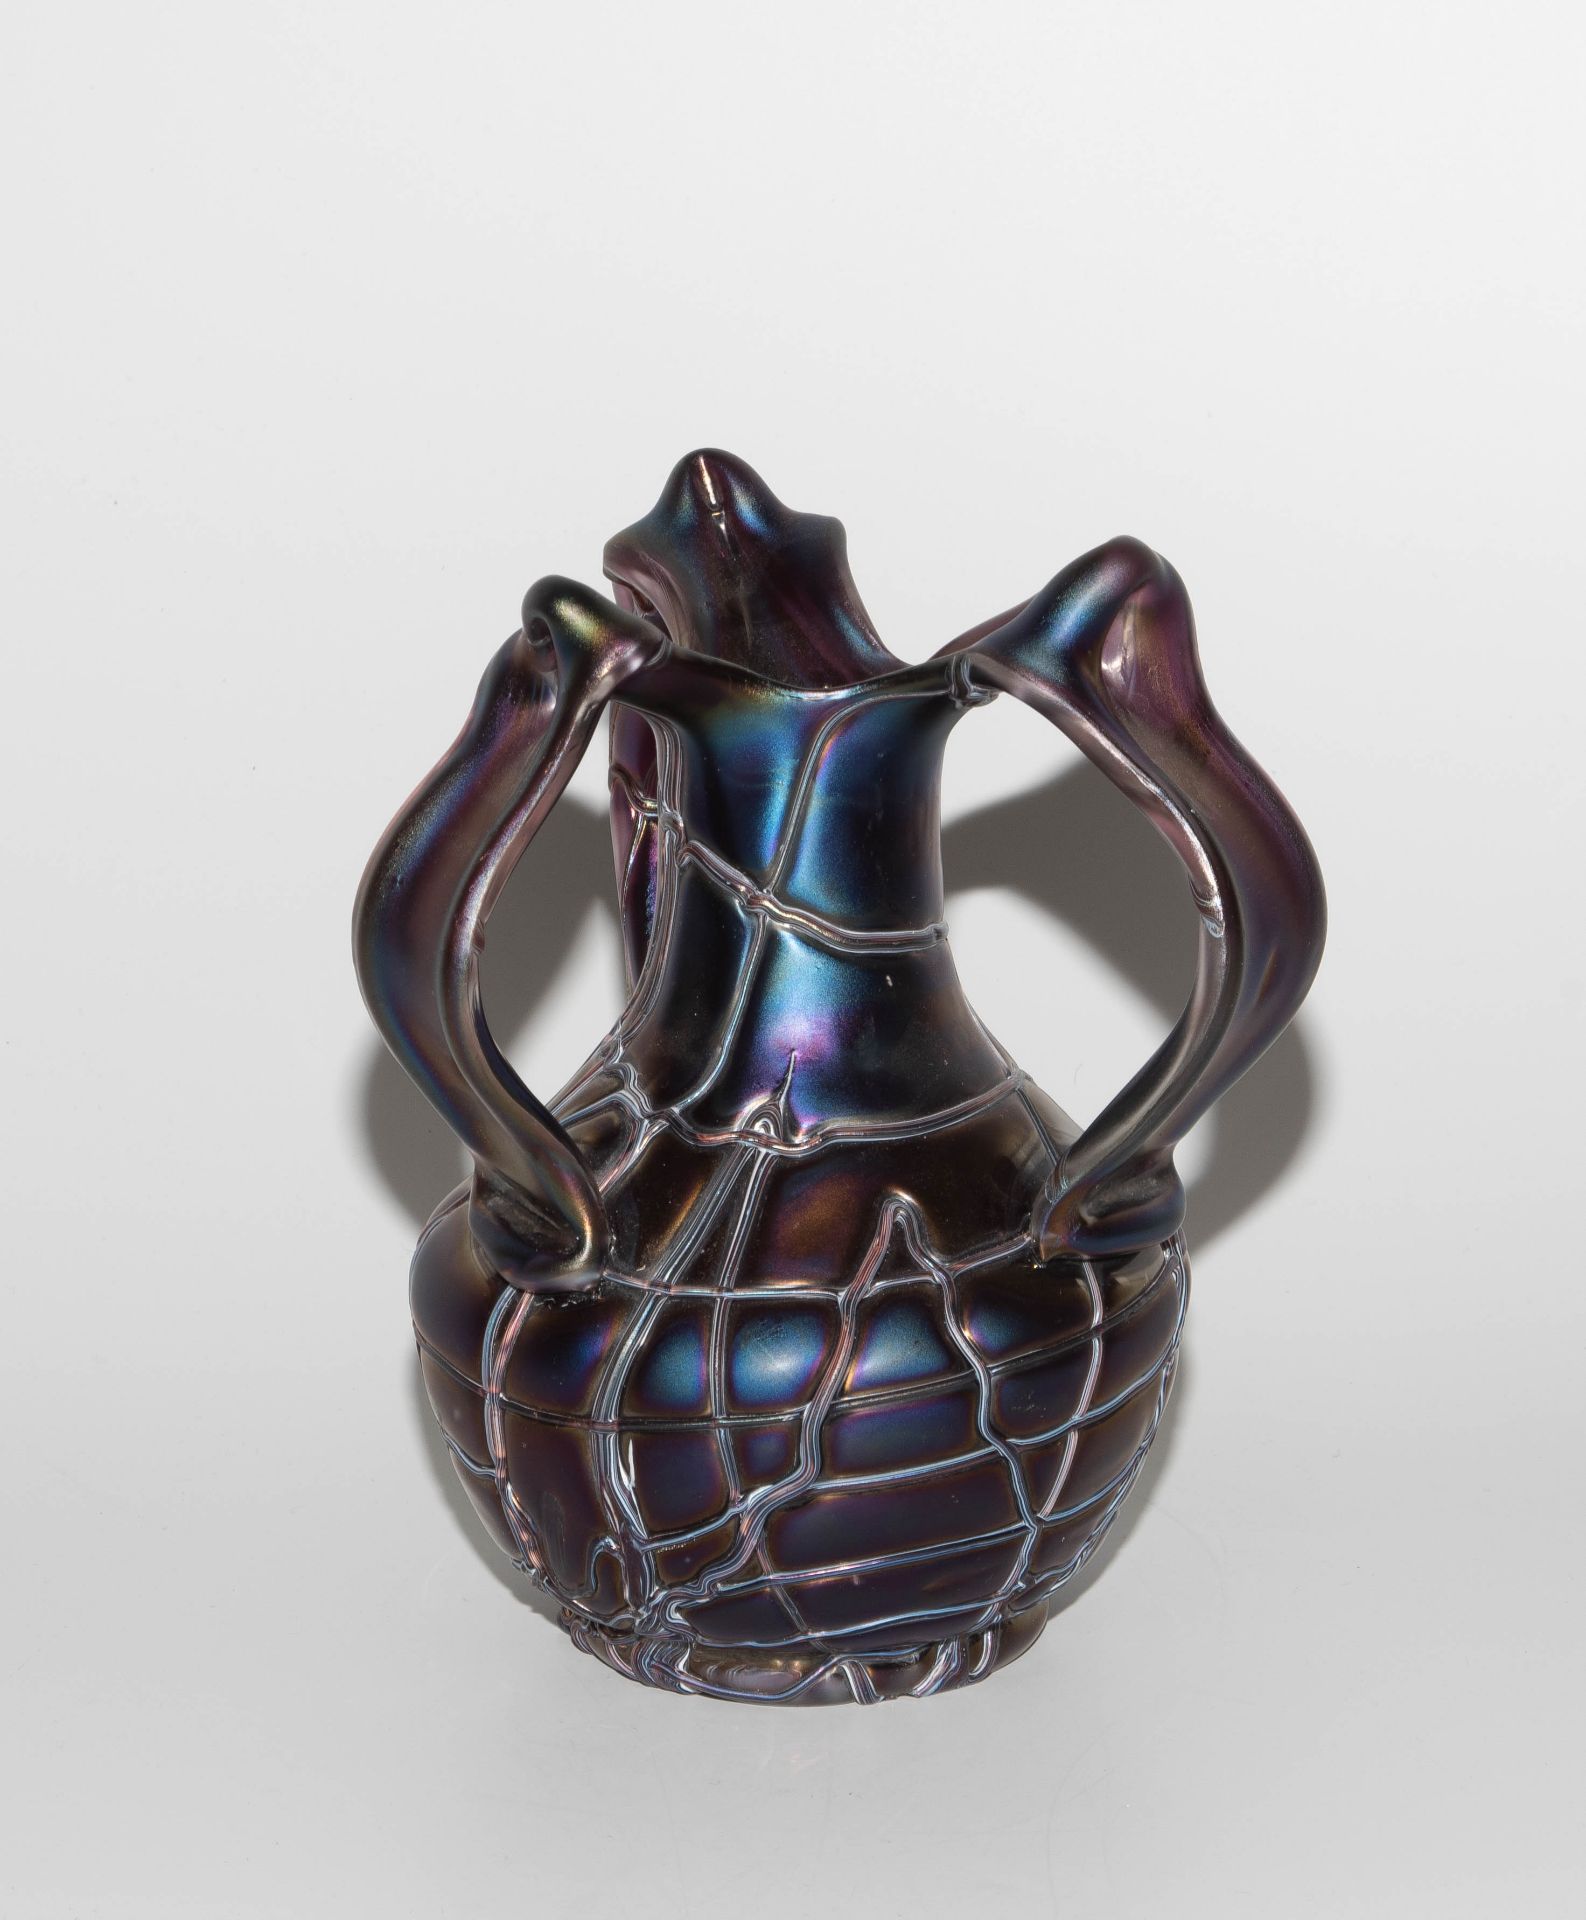 Pallme-König & Habel (zugeschrieben), Vase "Patras" - Bild 2 aus 7